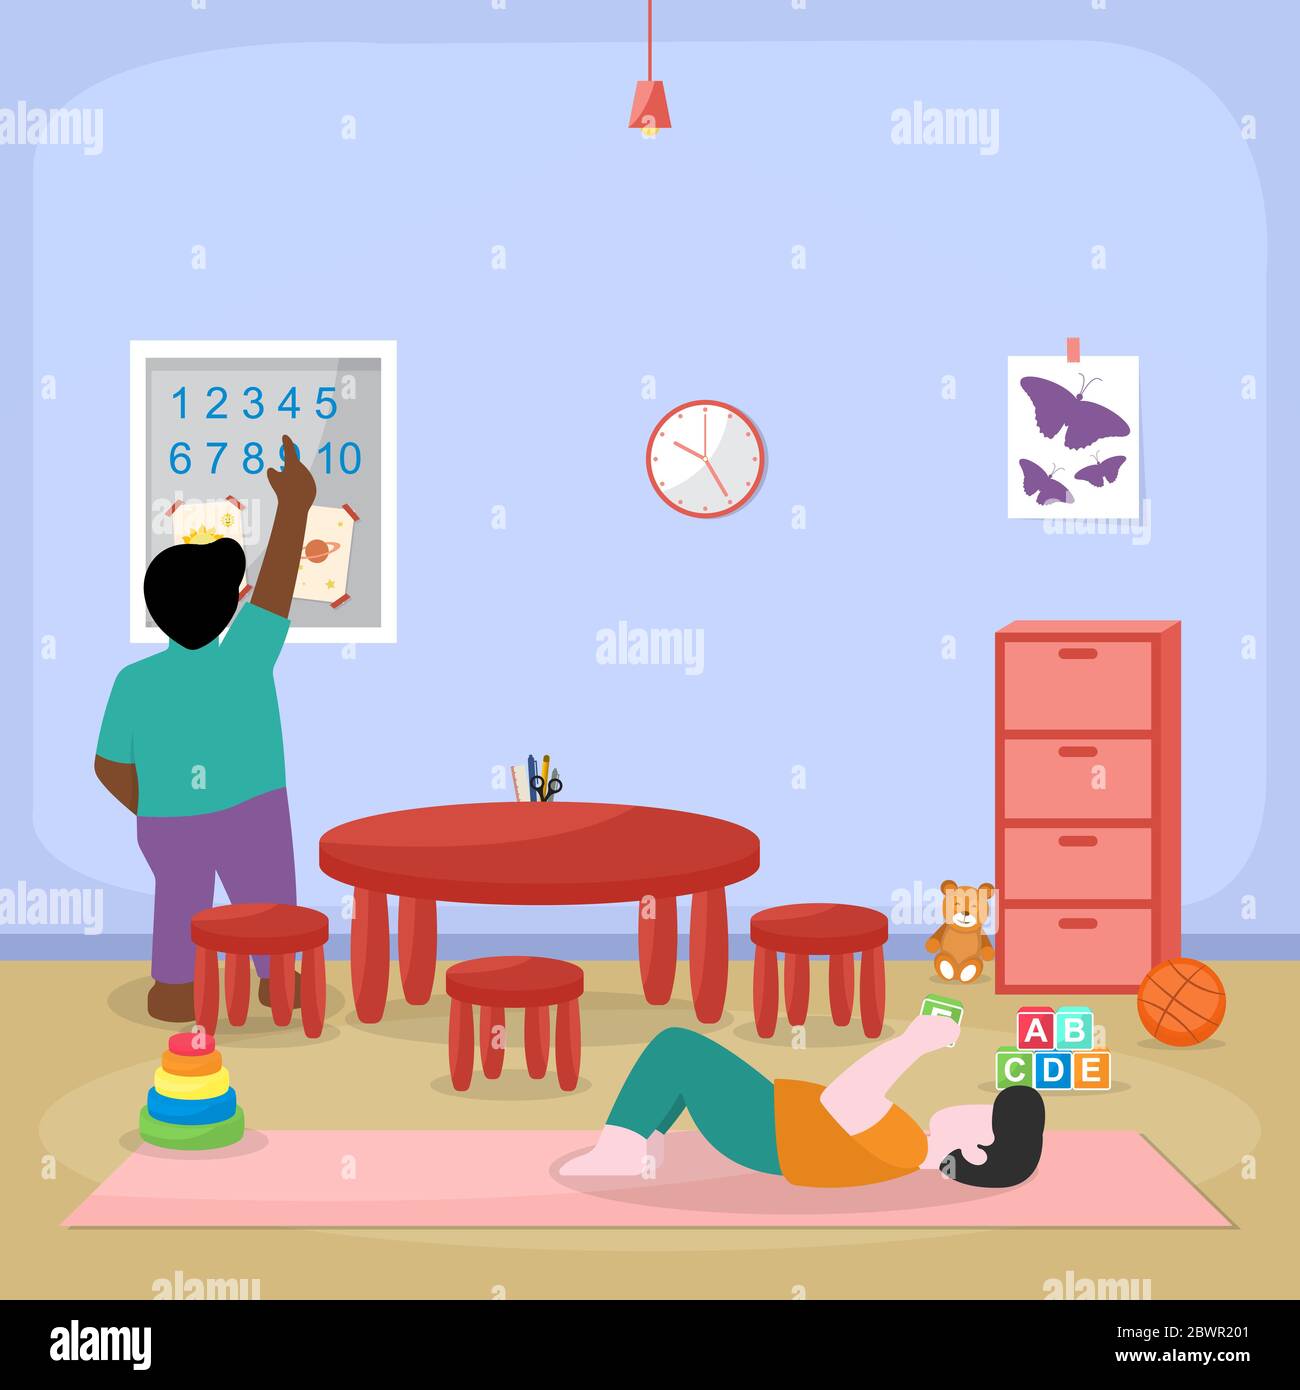 Kinder Kinder Lernen durch Spielen Bildung Spielzeug Kindergarten Flat Illustration Stock Vektor